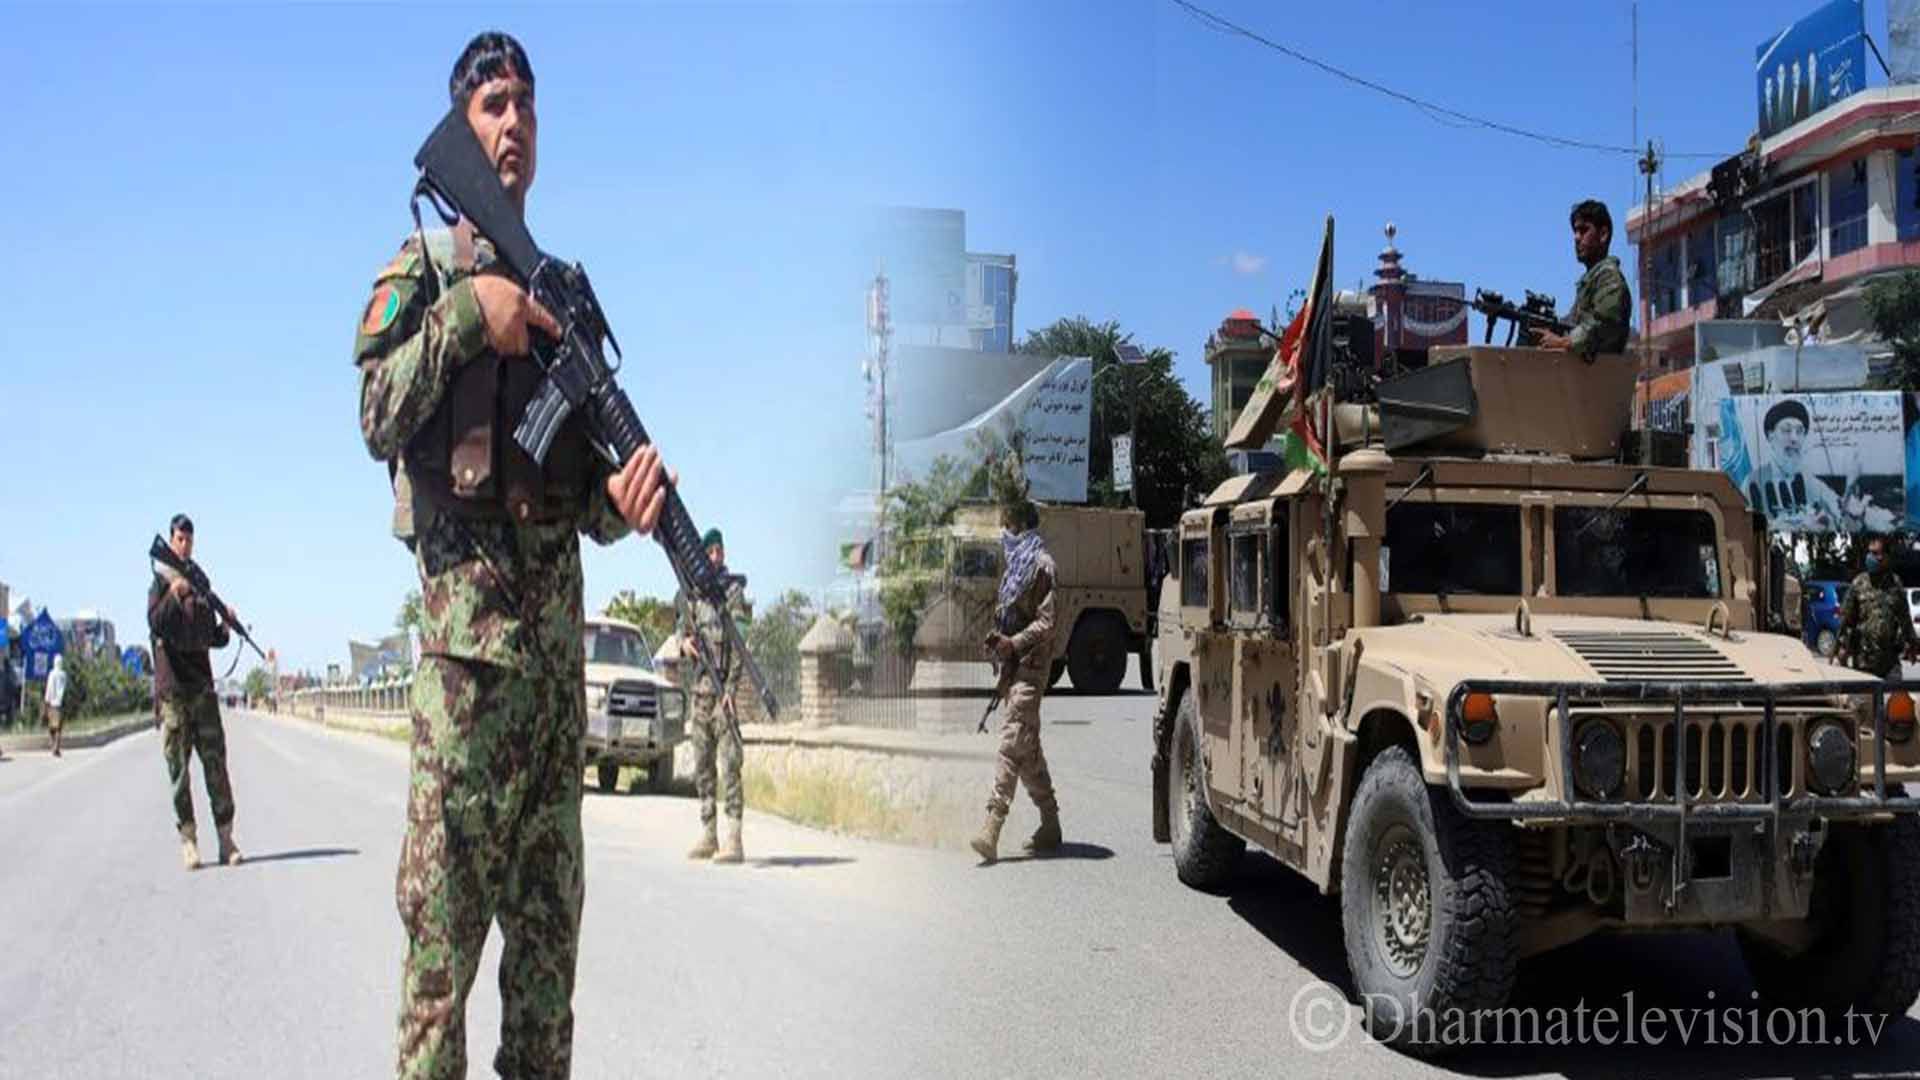 अफगान सेनाको कारबाहीमा ८ जना तालिबान विद्रोहीको मृत्यु